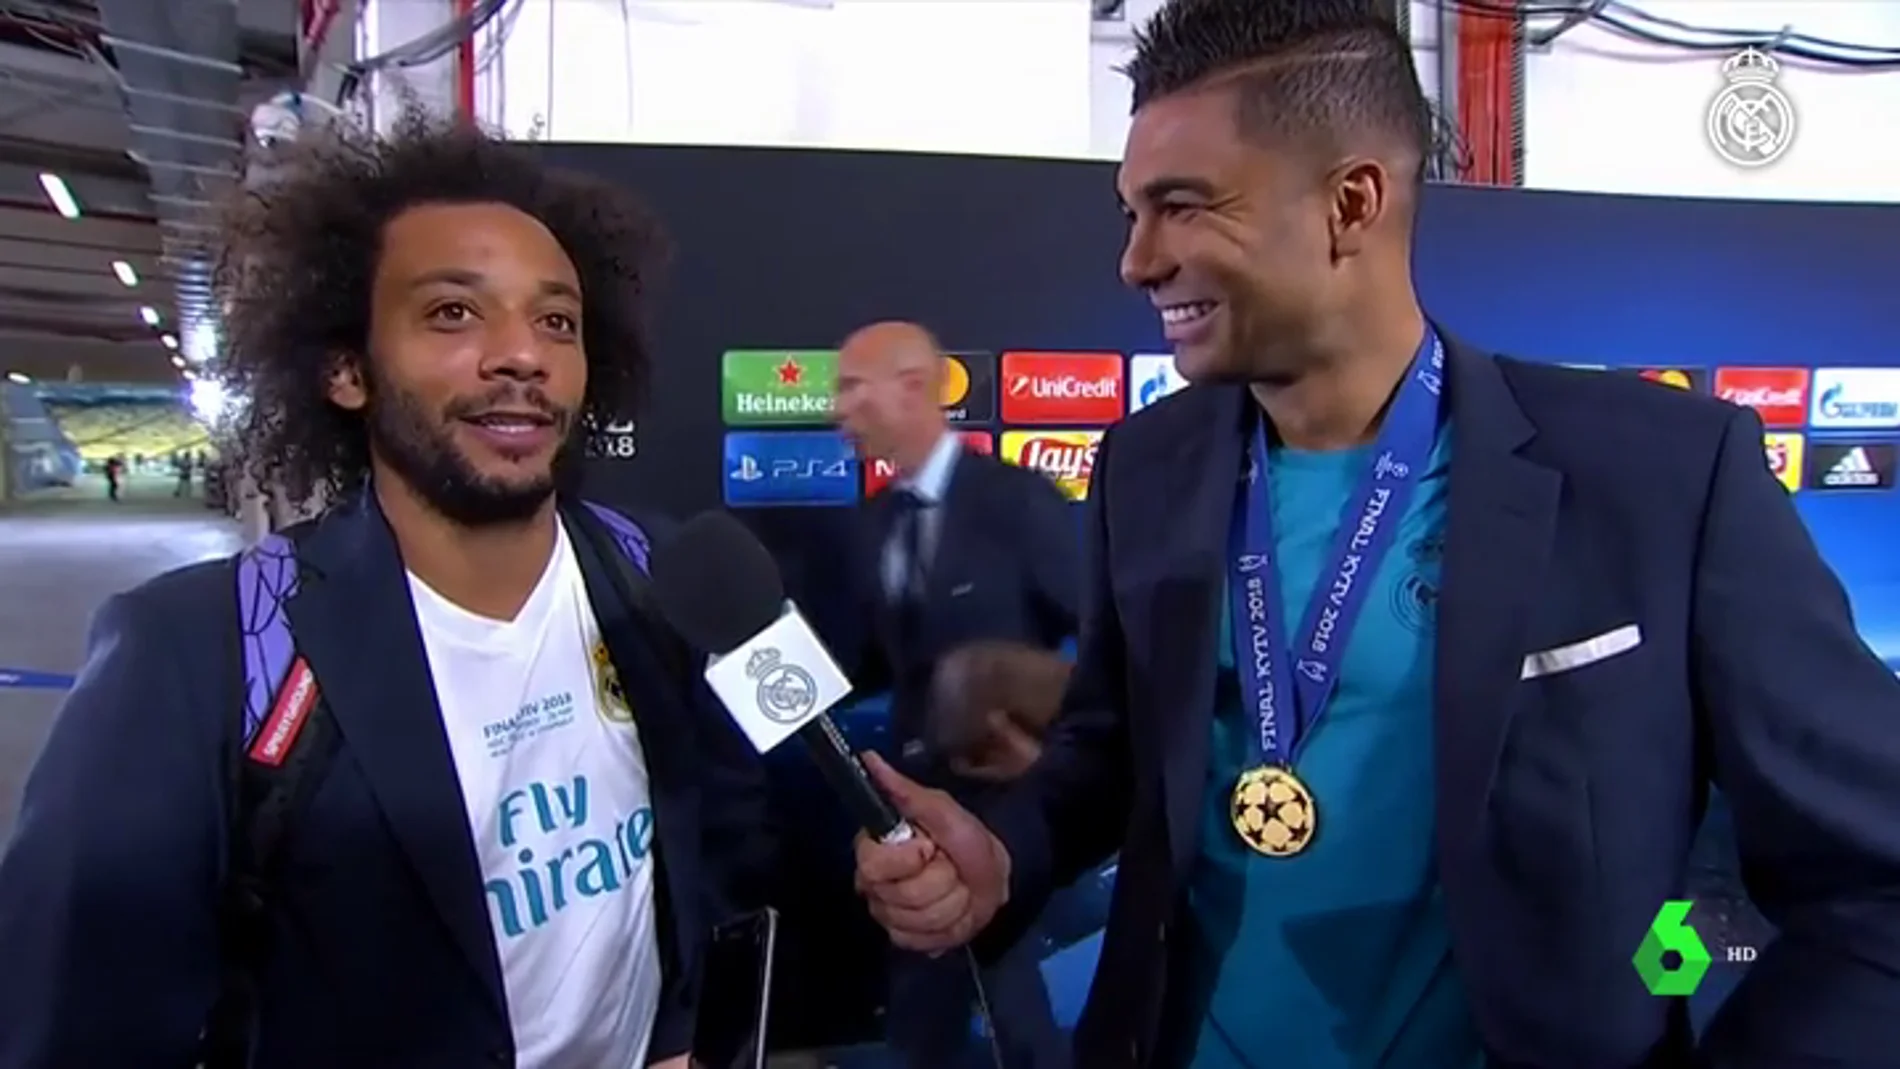 La genial conversación entre Marcelo y Casemiro tras ganar la Champions: "Estás mejor que yo, cabrón"